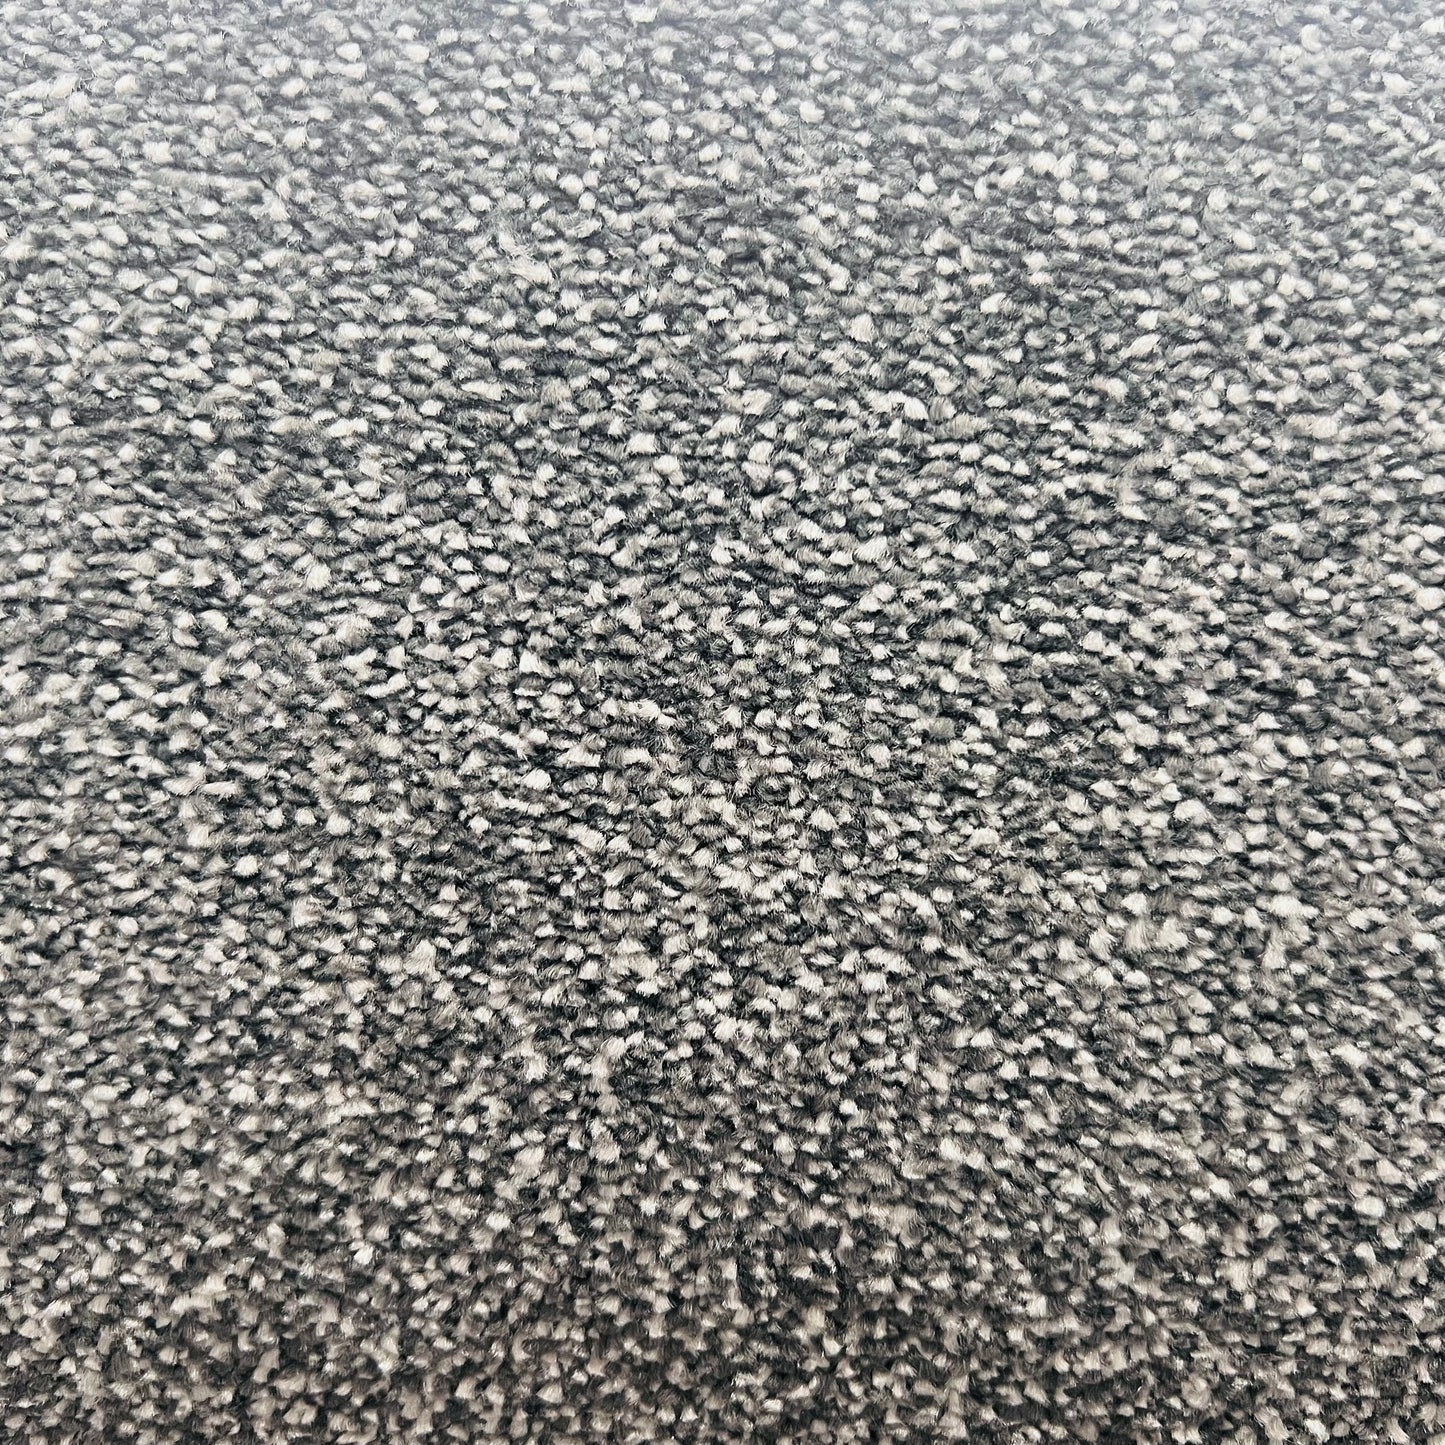 Barclay Dark Grey 4.7 x 4 m Roll End Carpet